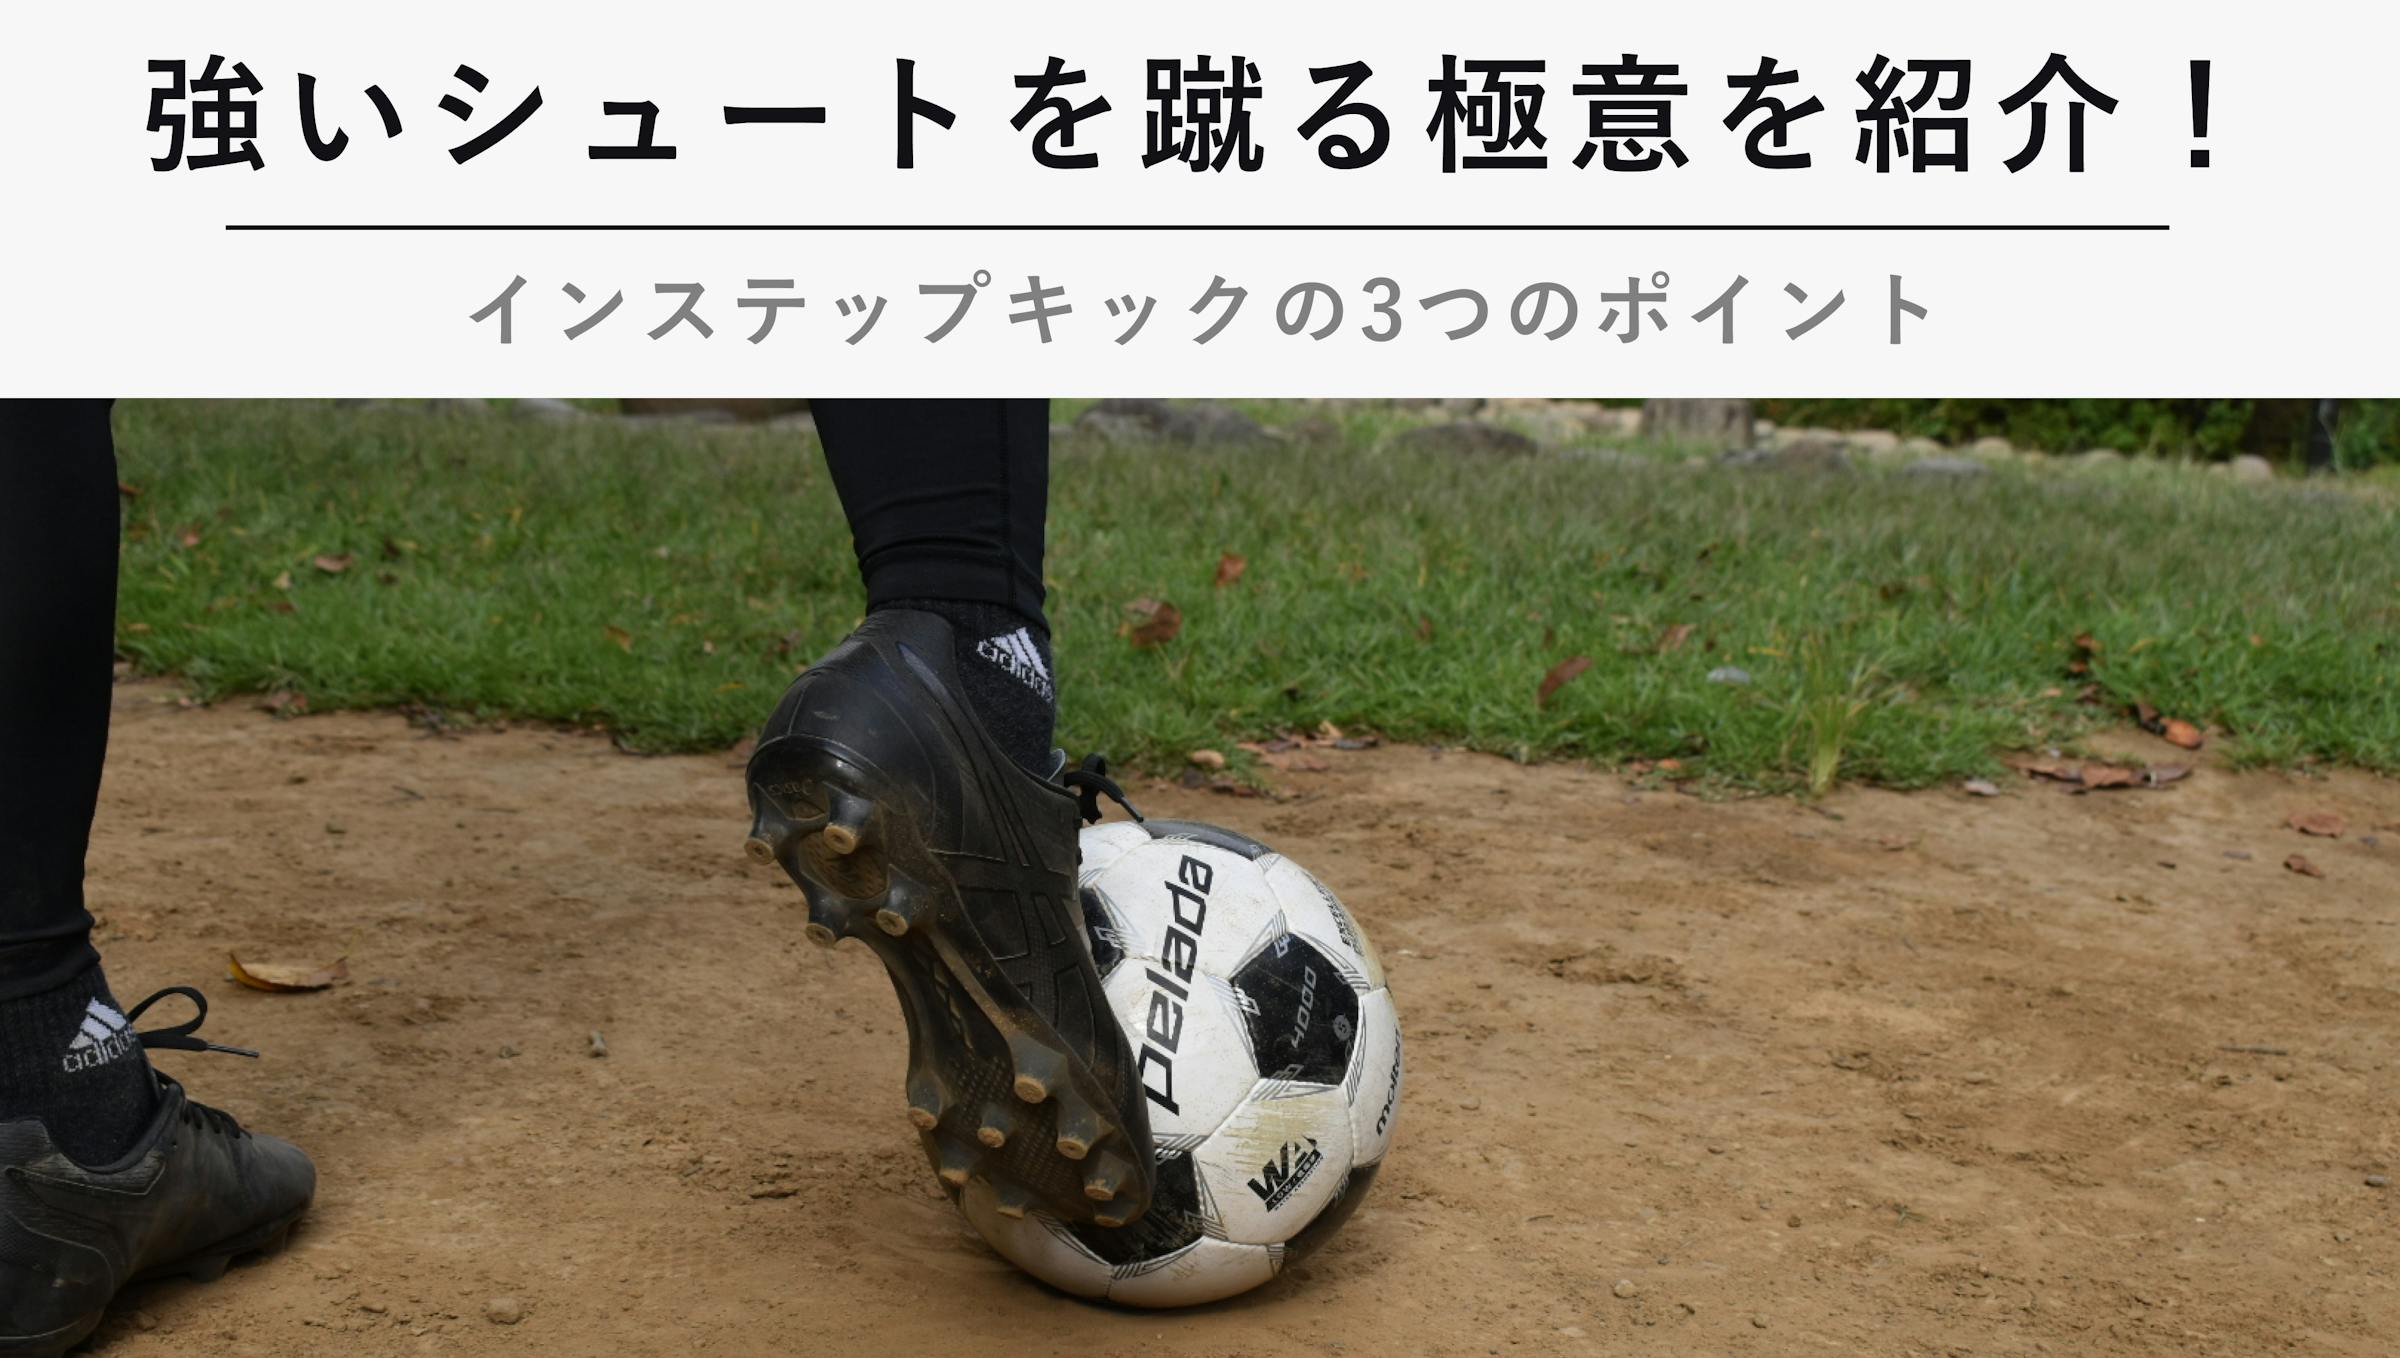 サッカーで強いシュートを蹴る極意を紹介 インステップキックの3つのポイント Kencoco ケンココ